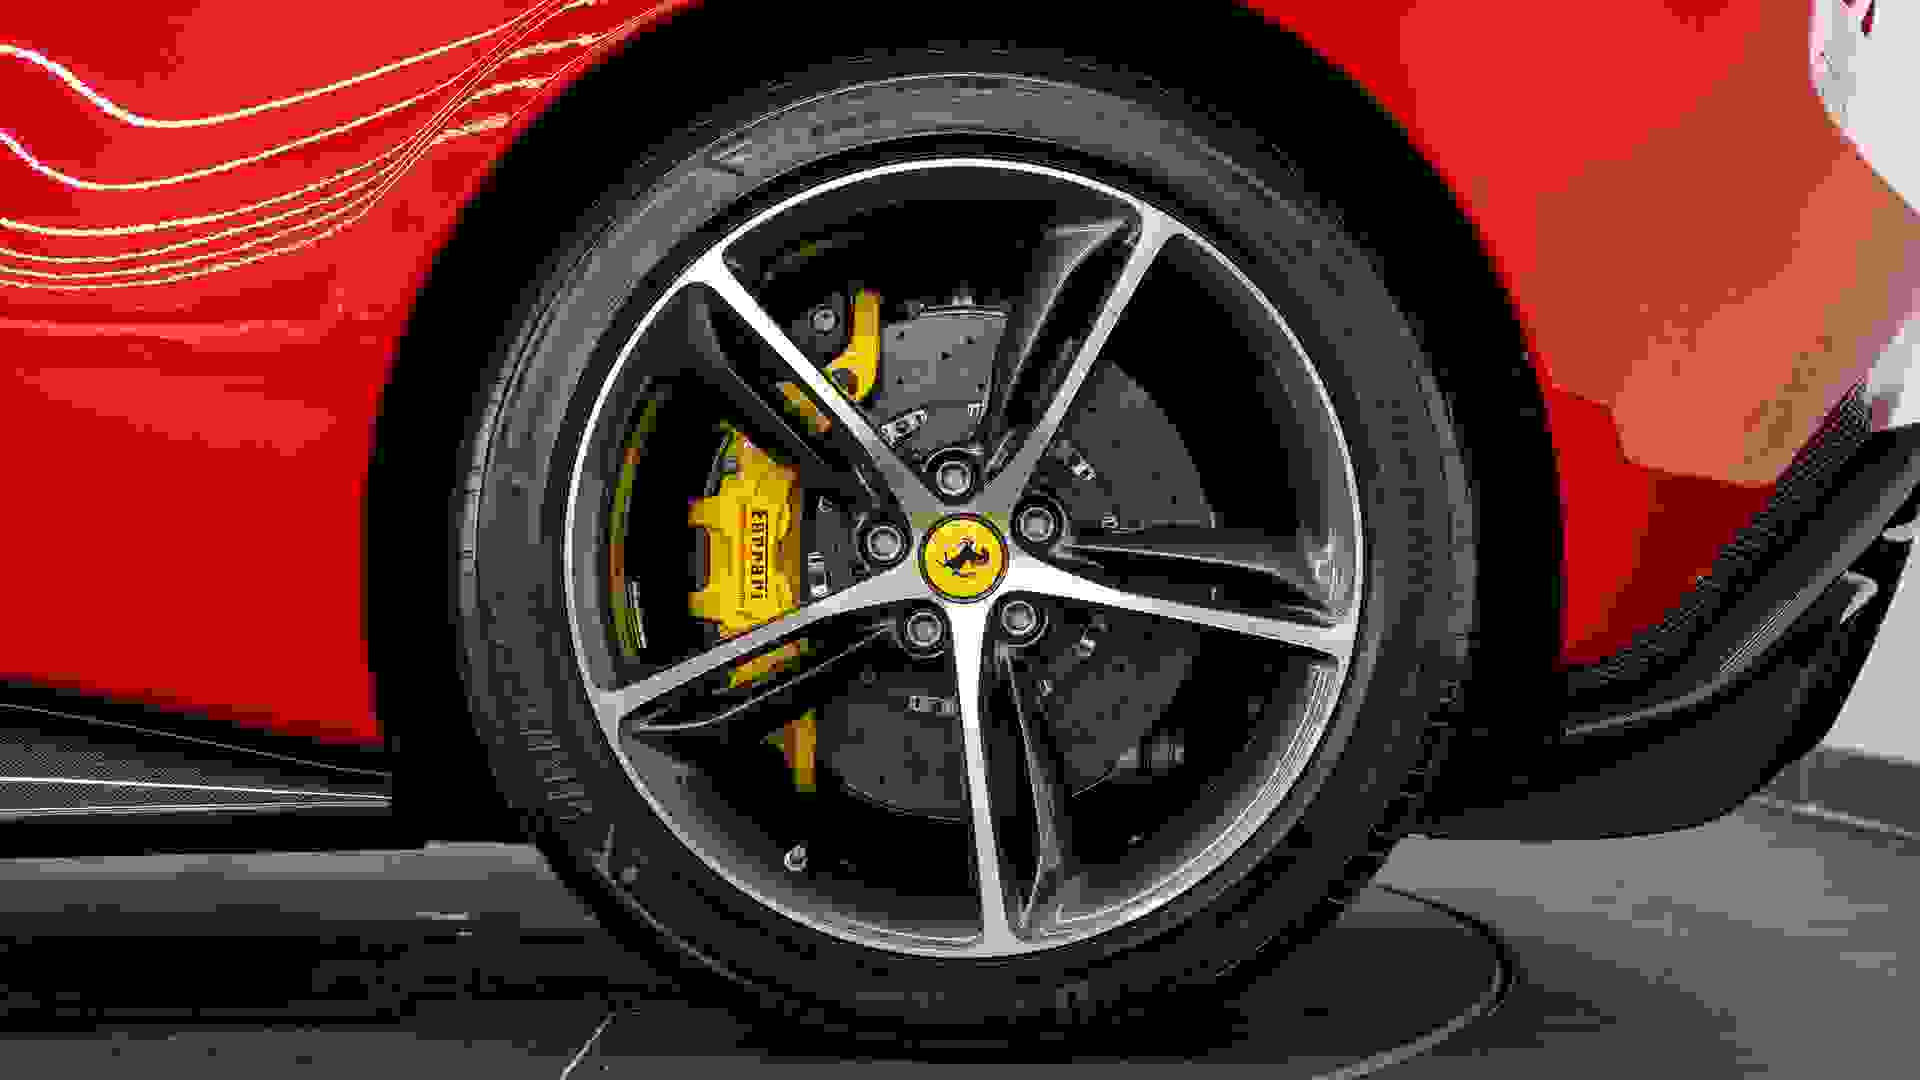 Ferrari 296 Photo e2e1e70b-6cea-41b3-a1a6-2d561b243748.jpg